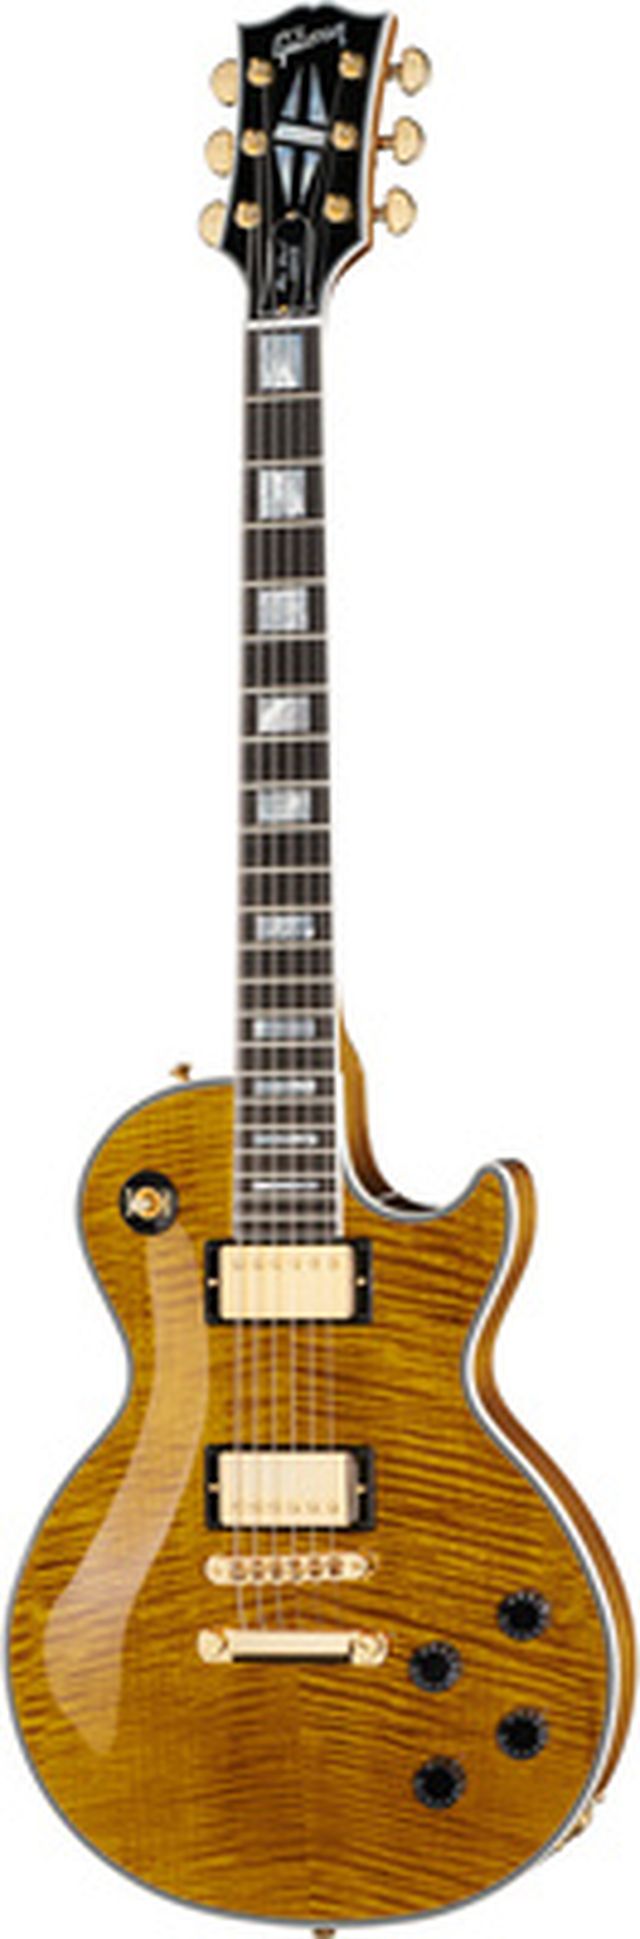 Gibson Les Paul Cust. HPT FTA #2